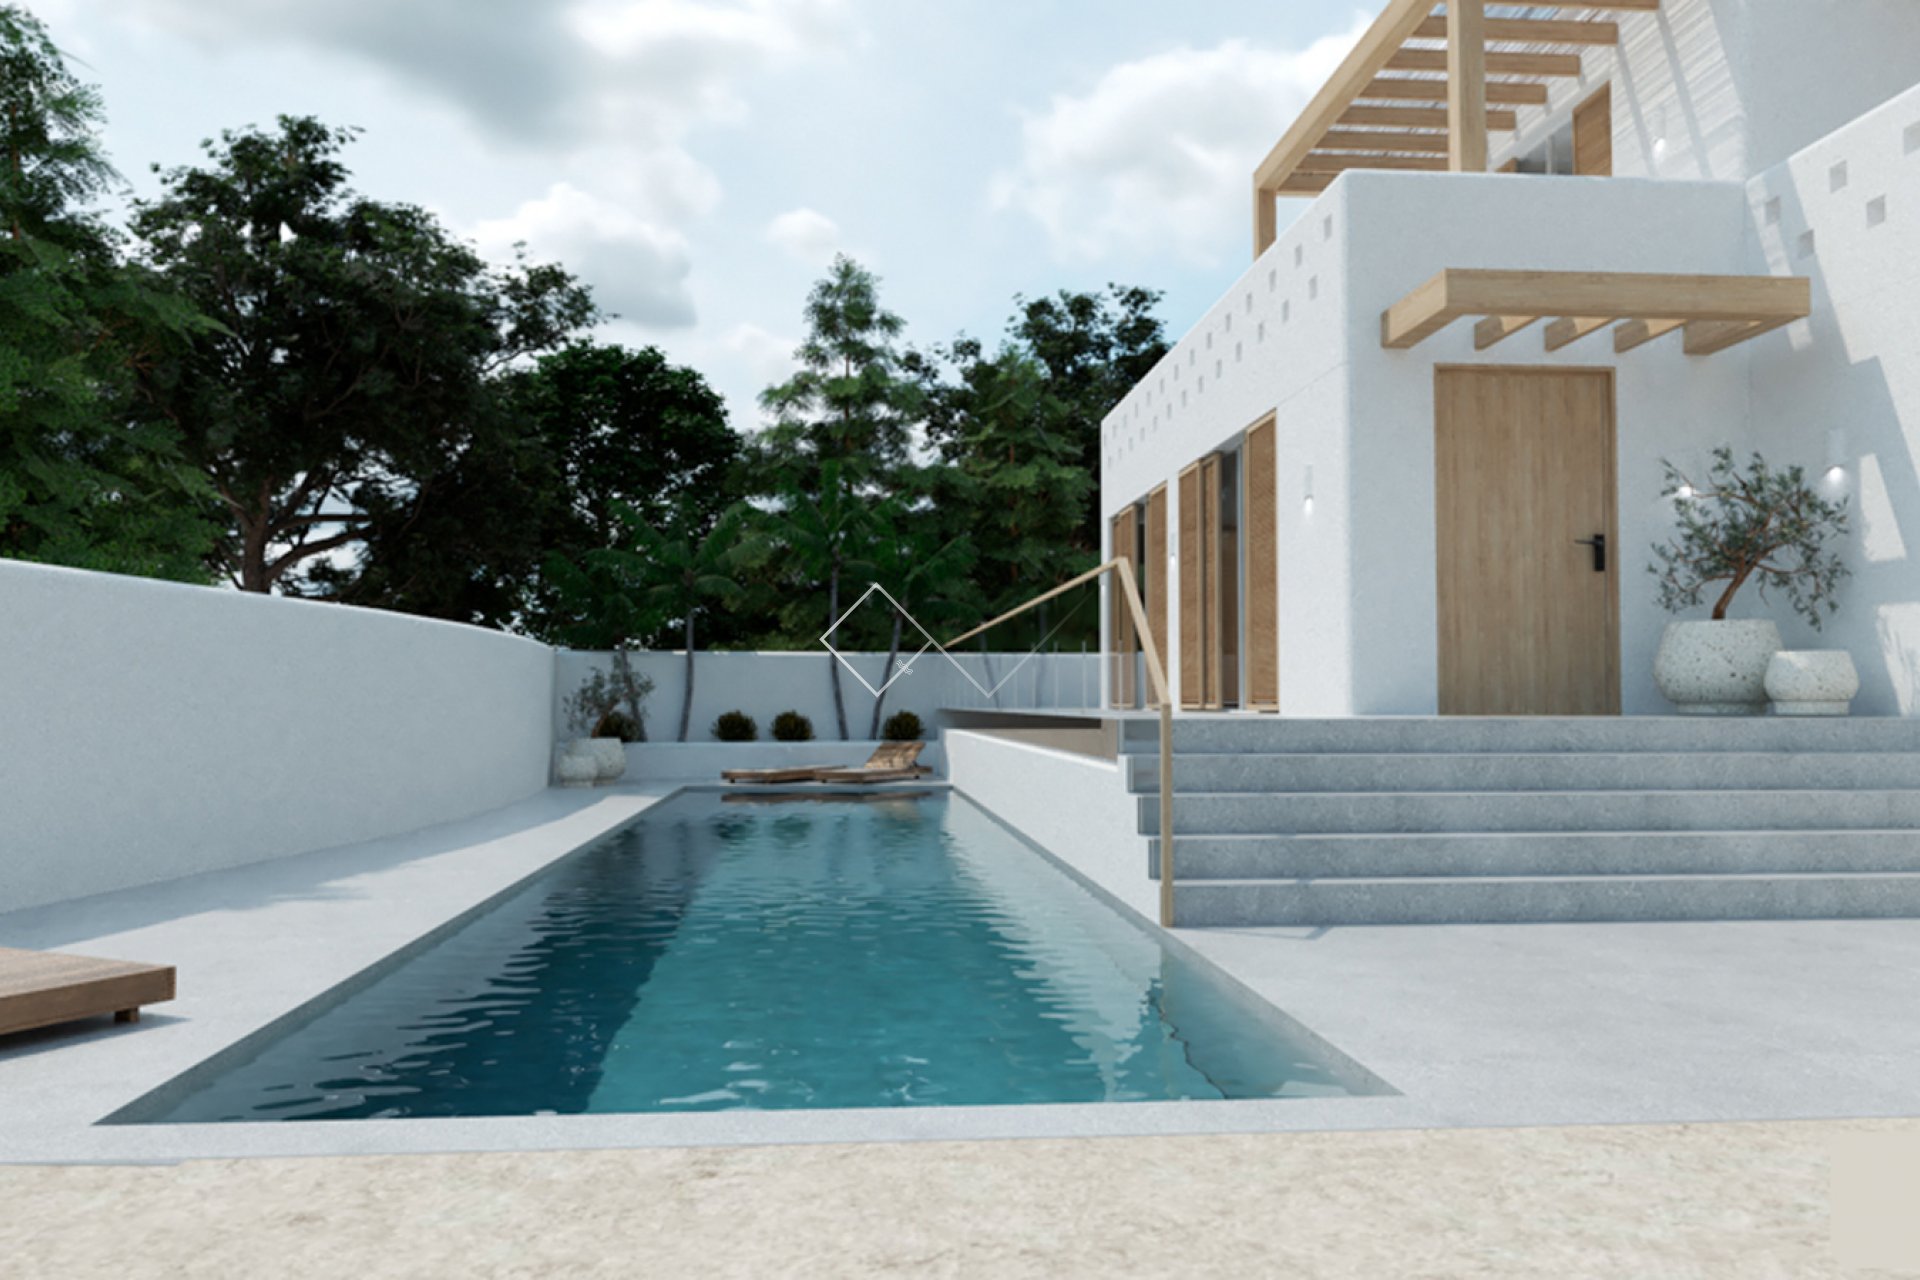 proyecto de renovación - Villa estilo ibicenco en venta en Moraira